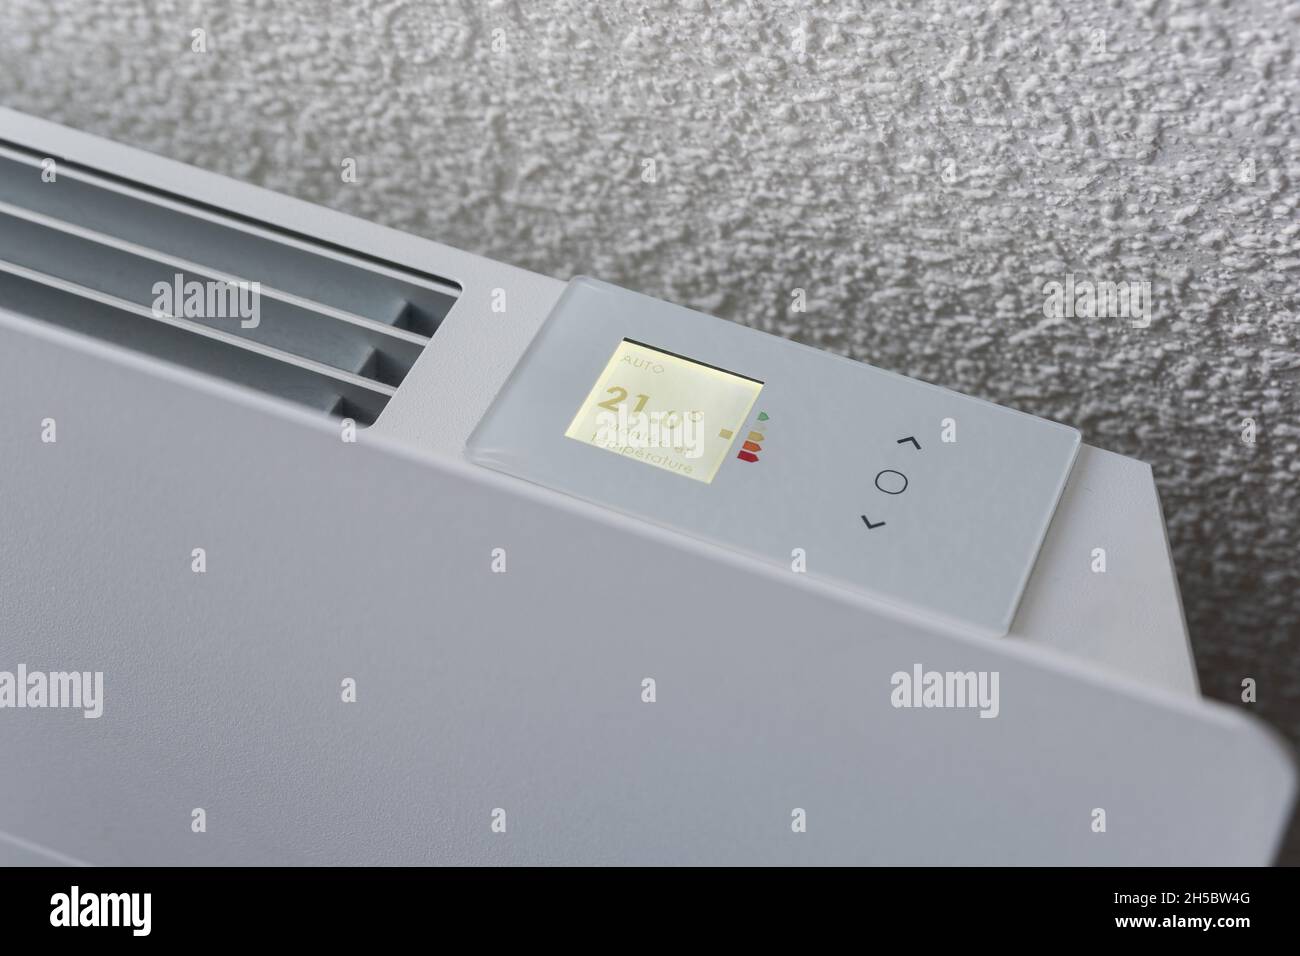 Panel de control calefacción doméstica 21 grados Foto de stock